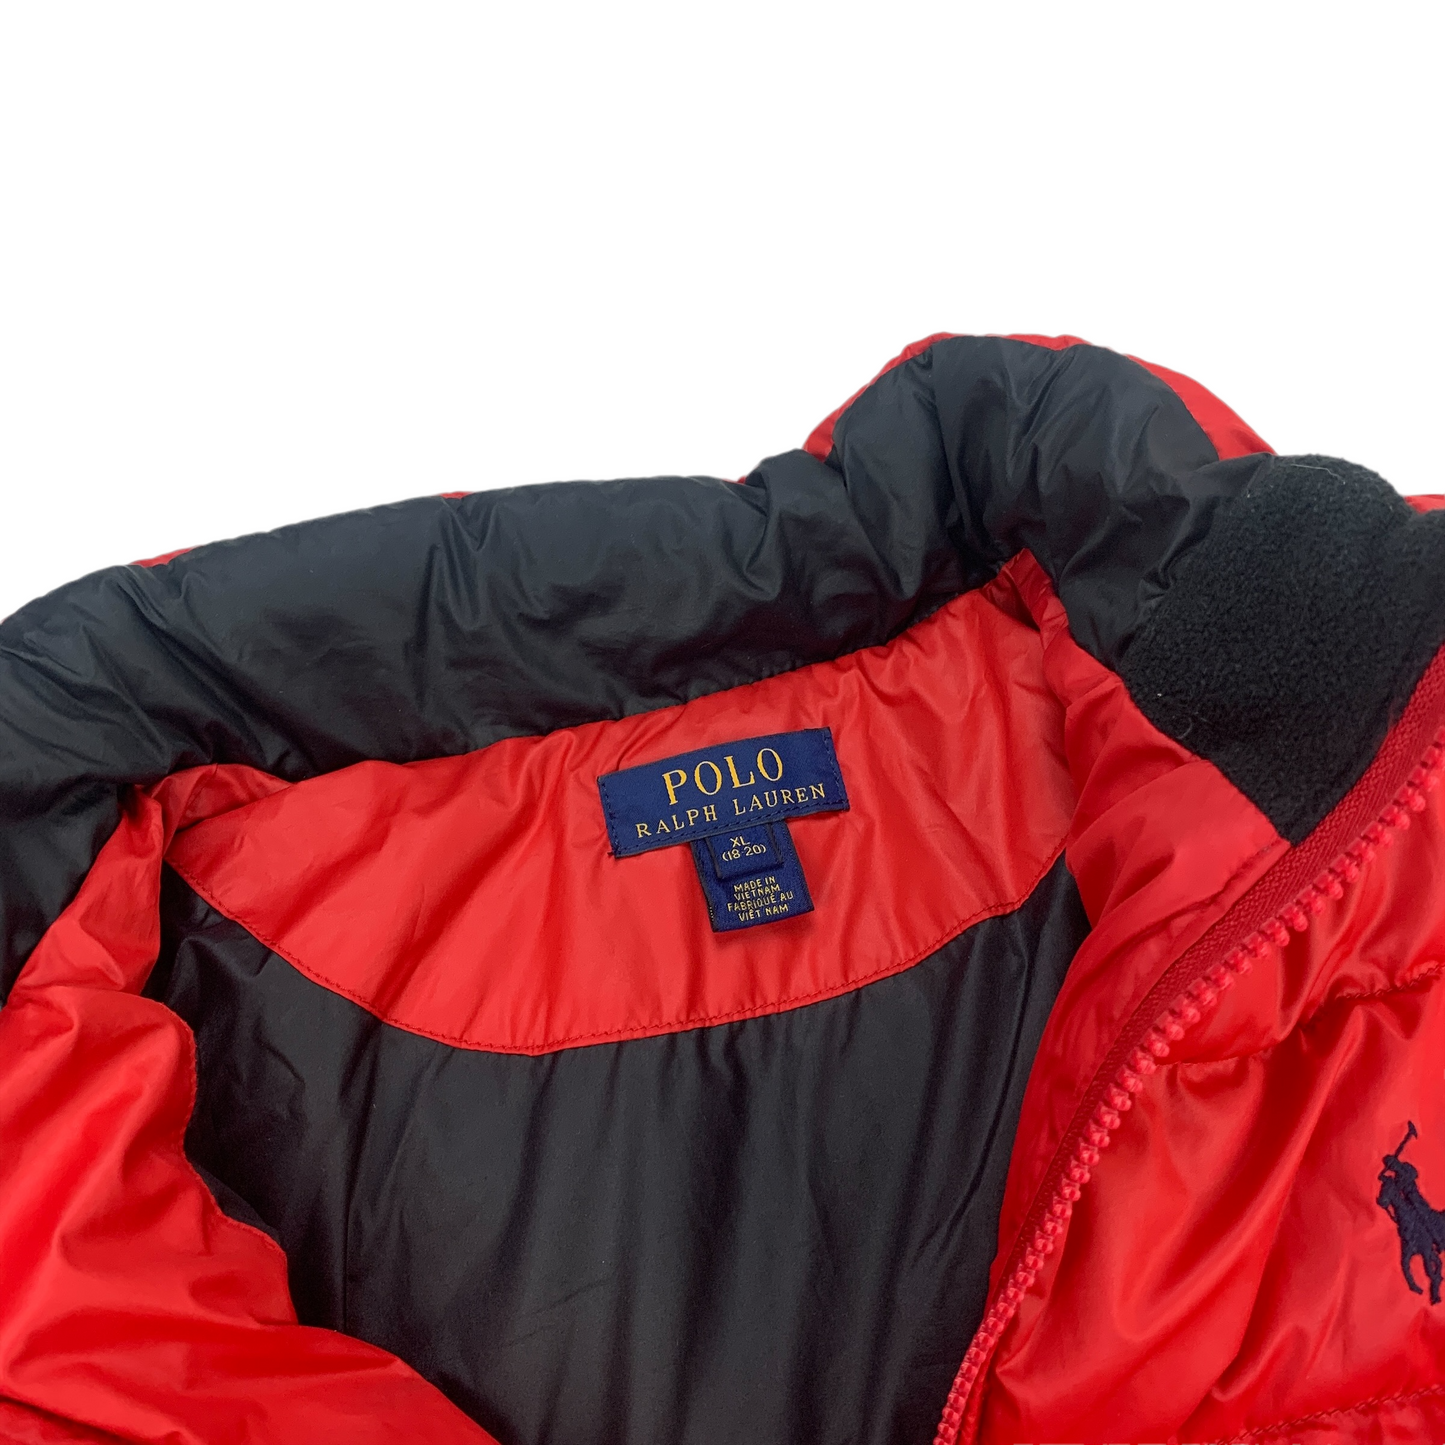 Polo Ralph Lauren Light Puffer Jacket-Ralph Lauren-pufferseason-ralph-lauren-polo-sport-down-coat-puffer-jacket-secondhand-shop-vintage-austria